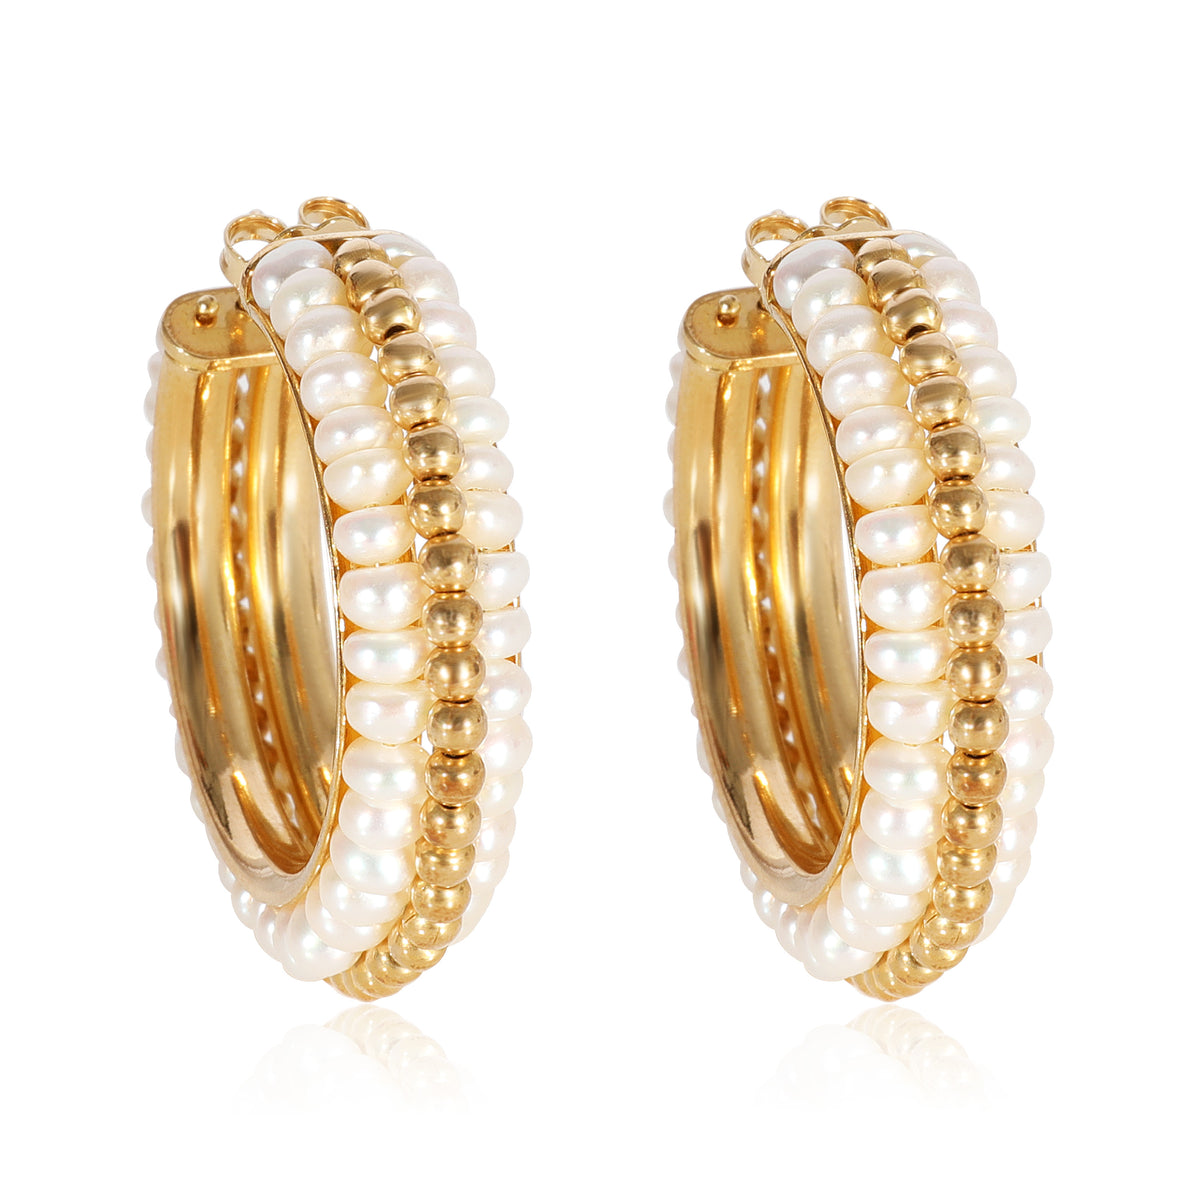 Le Gi Hoop Seed Pearl Earrings in 18k Yellow Gold